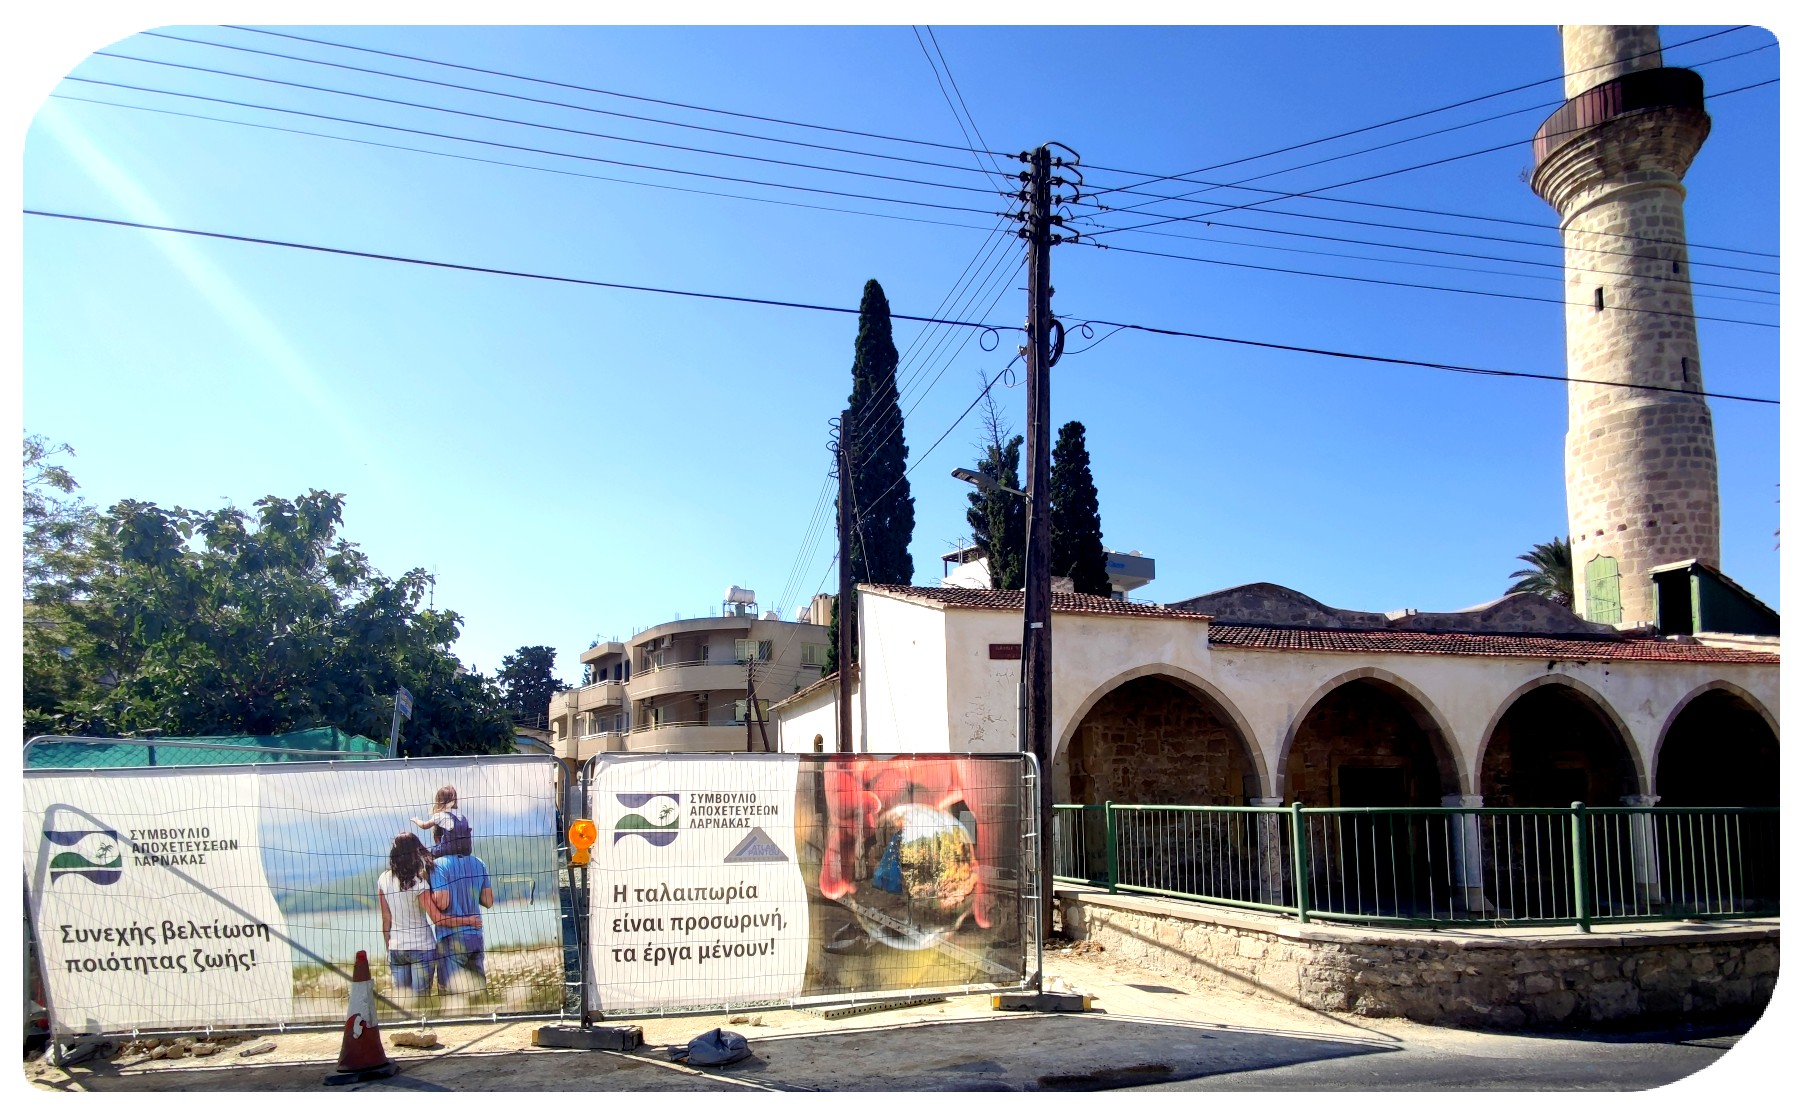 Δρόμοι κλειστοί λόγω κατασκευαστικών έργων στη Λάρνακα